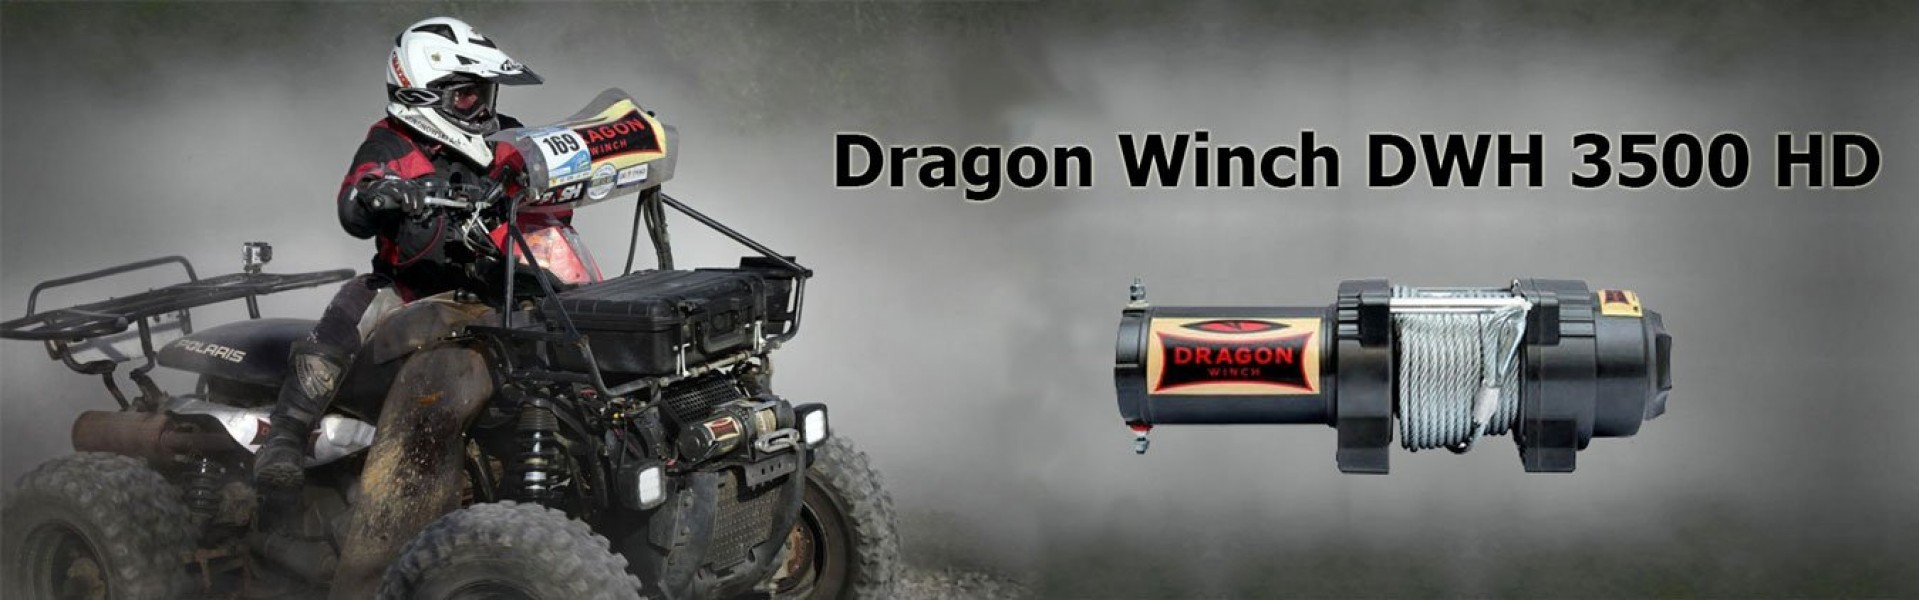 Dragon Winch DWH 3500 HD